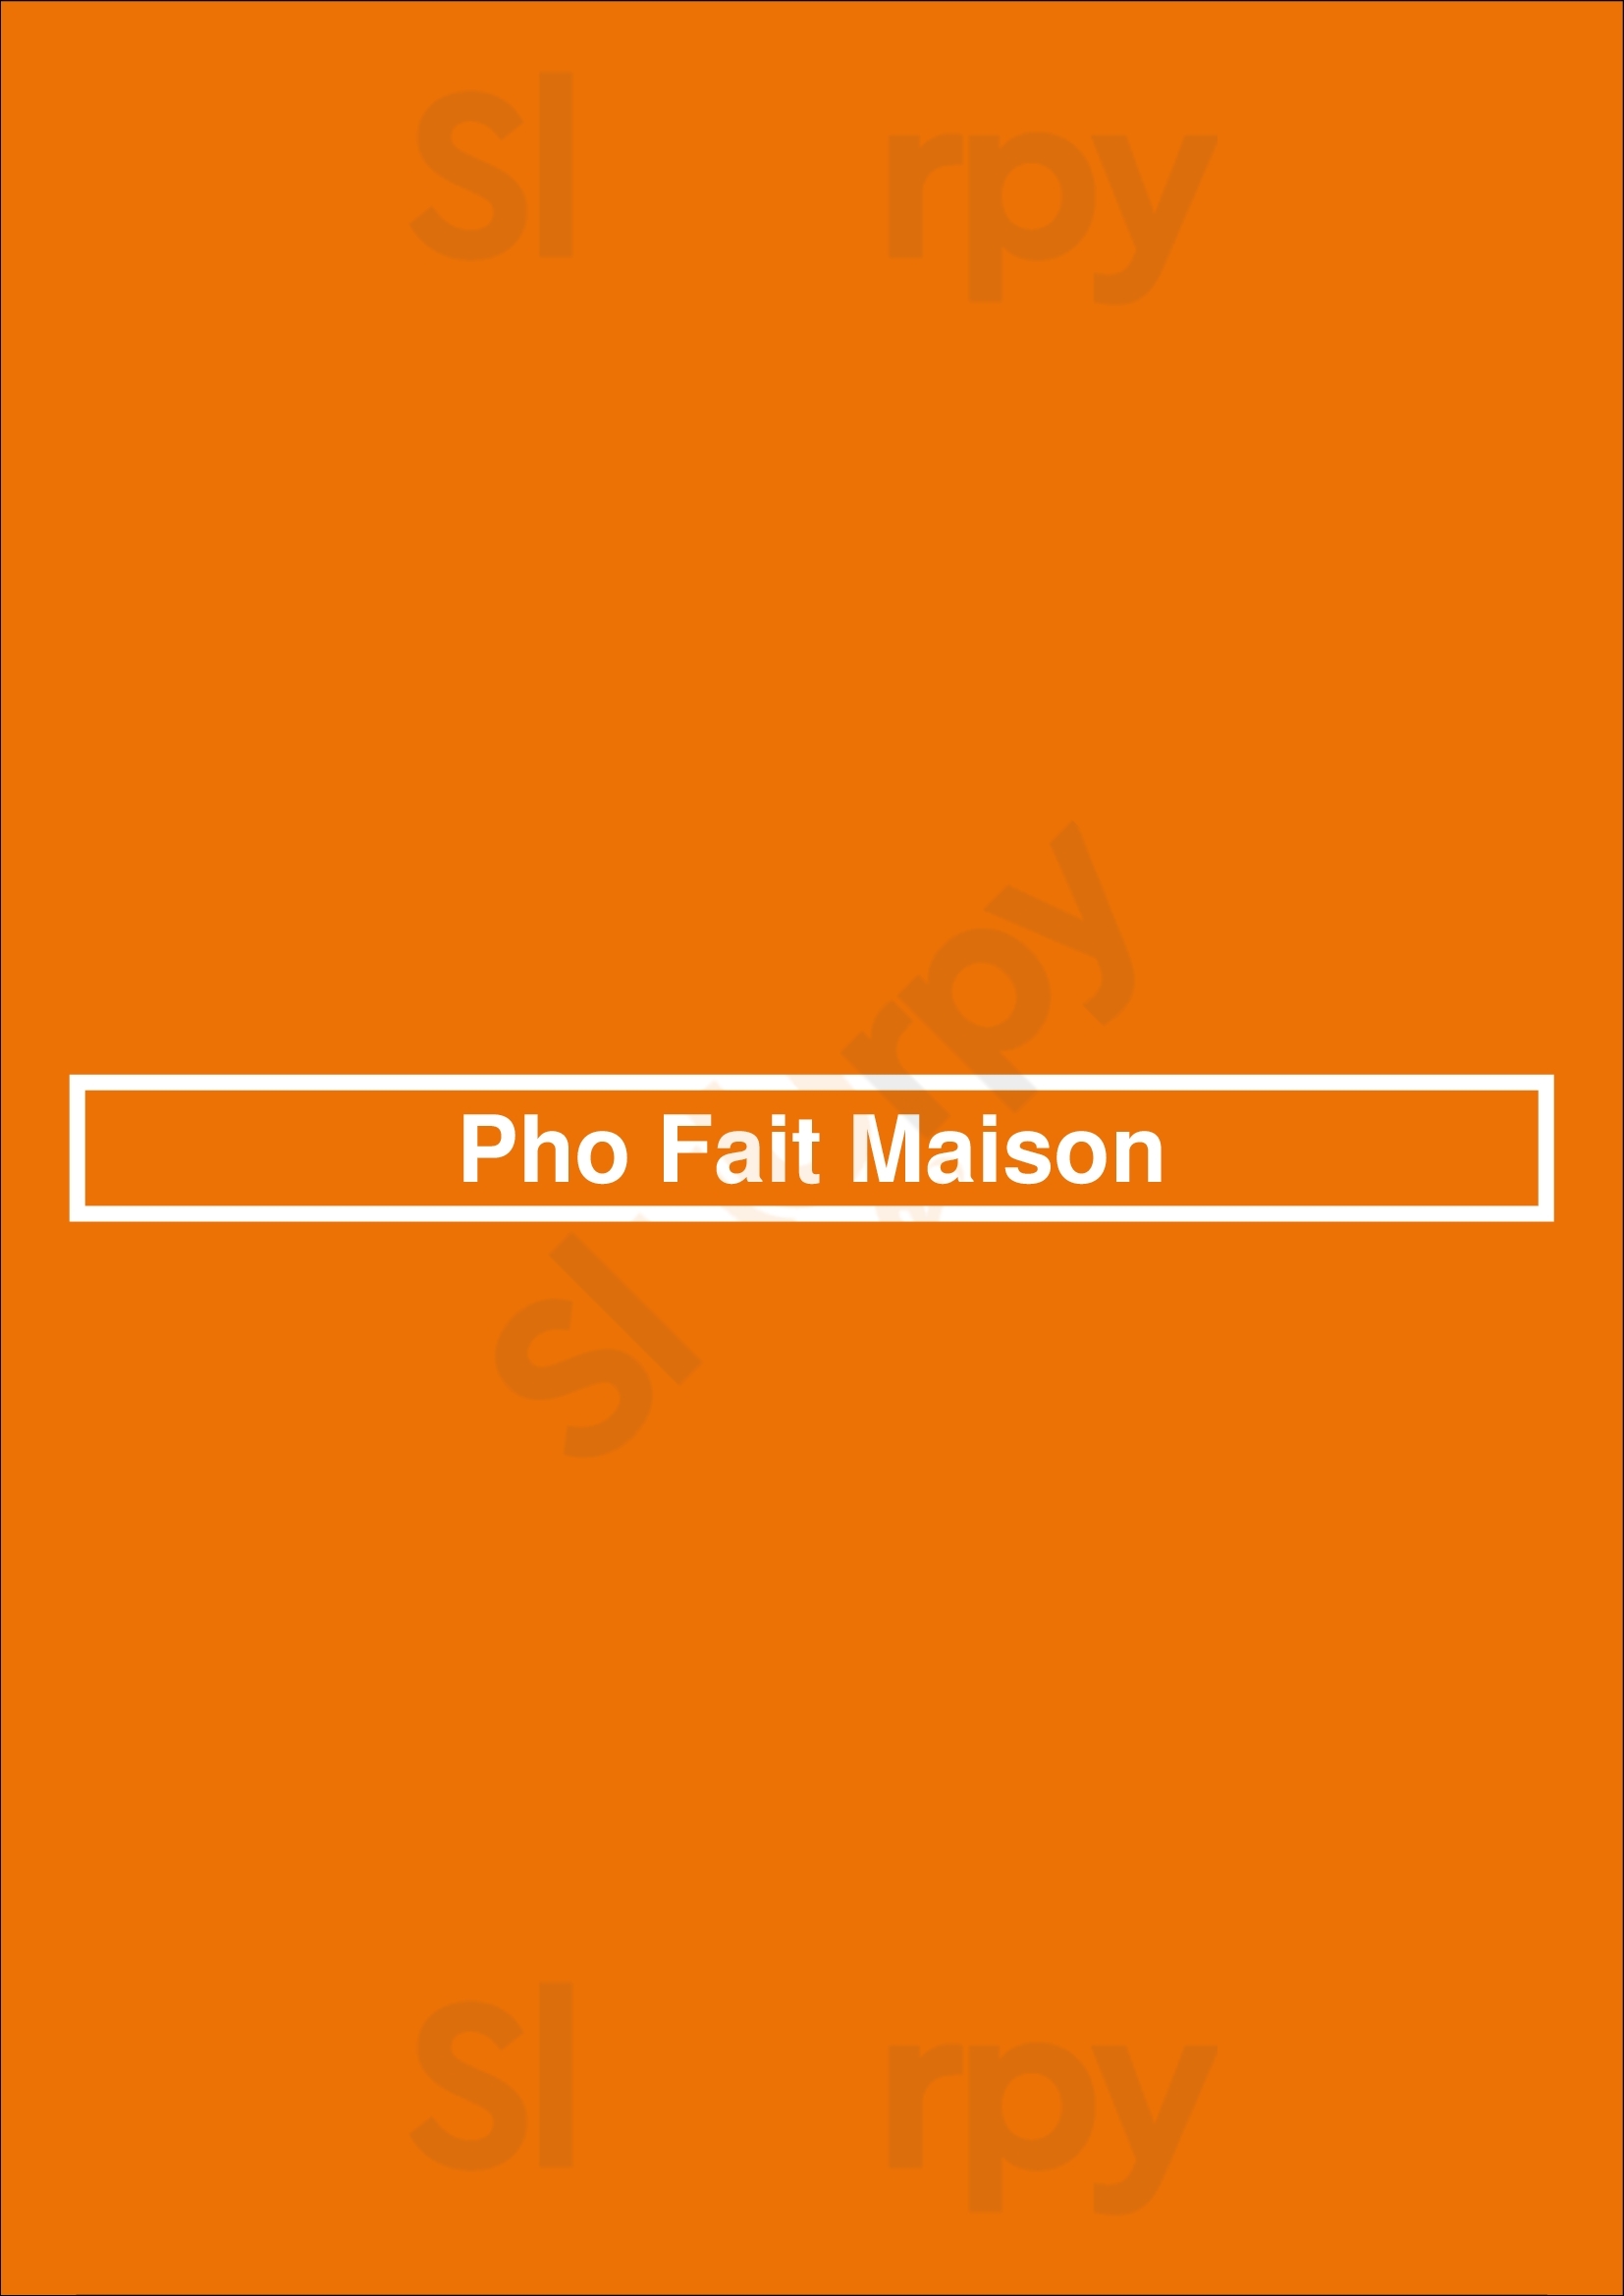 Pho Fait Maison Paris Menu - 1